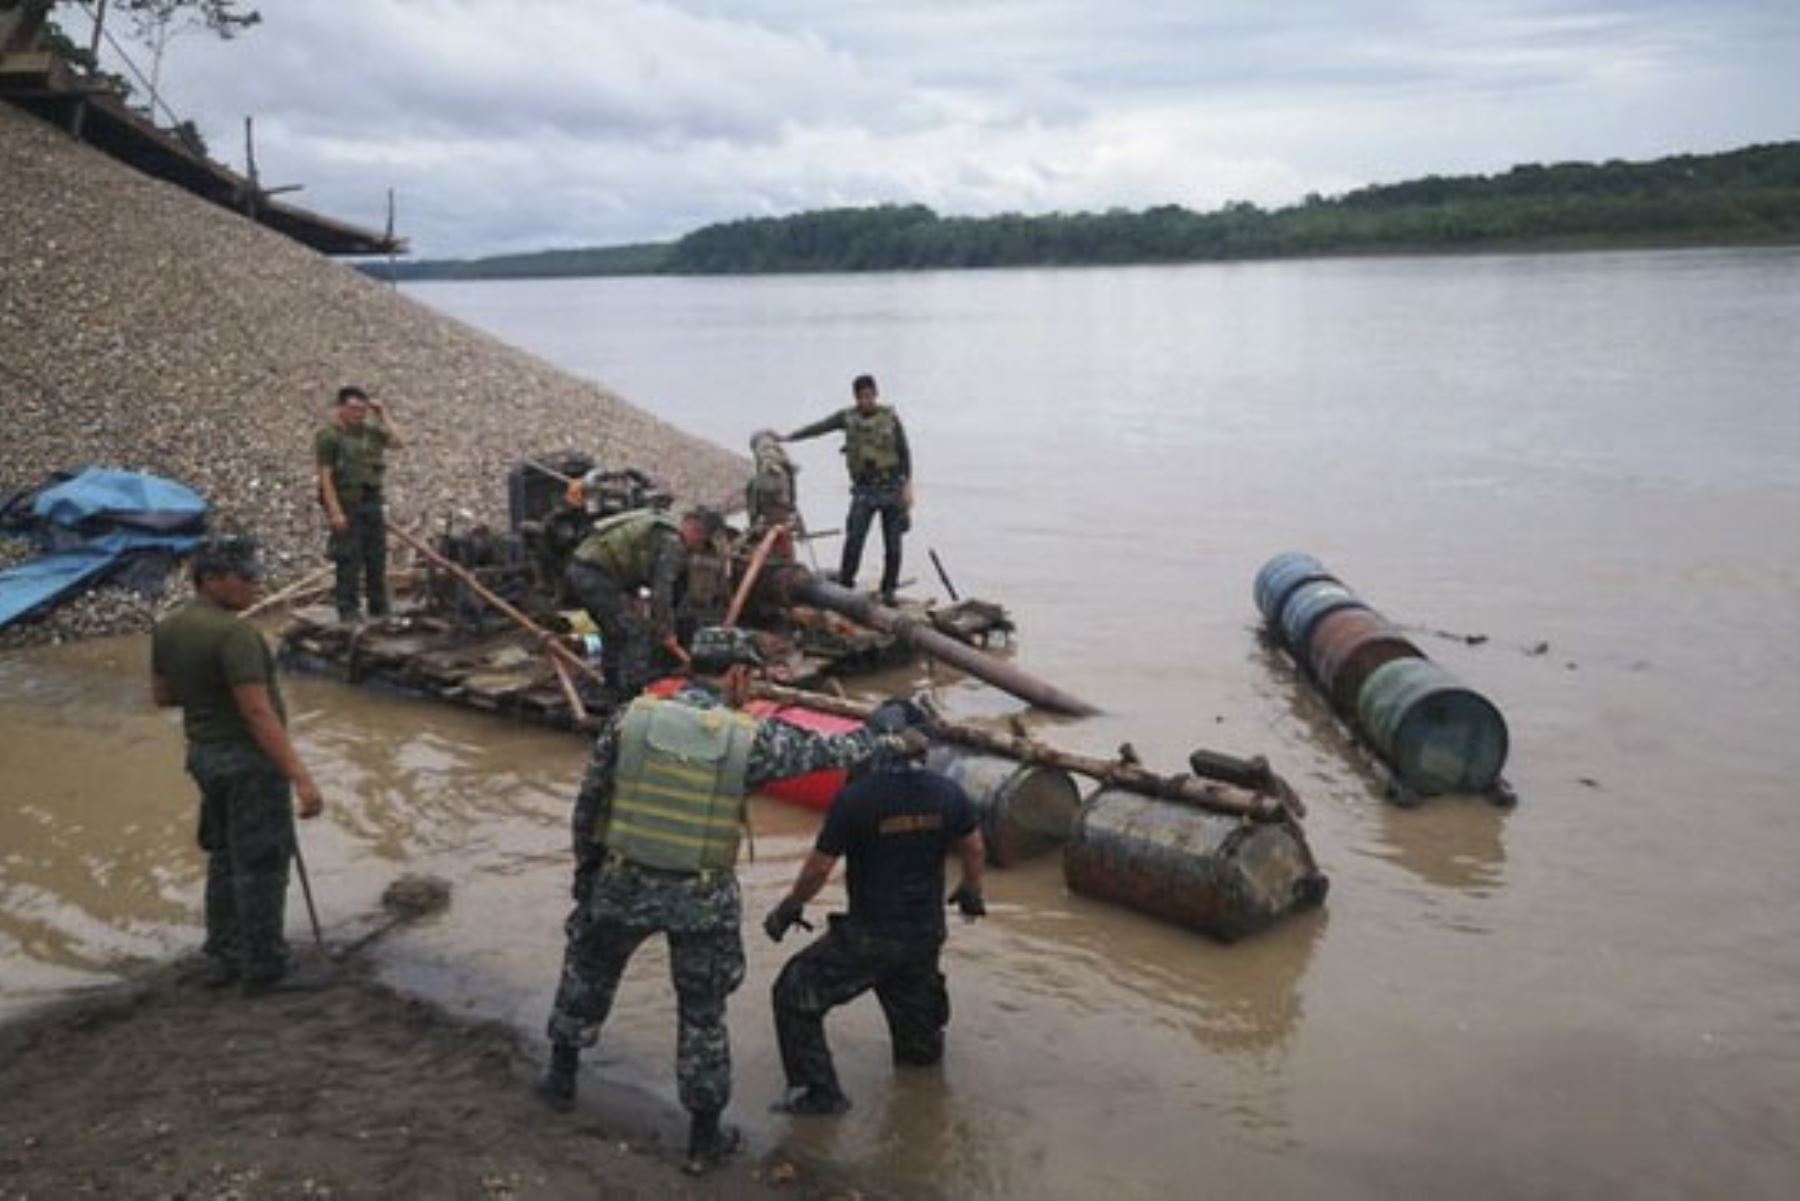 Se intervino un artefacto fluvial acoderado en la orilla del río Marañón, construido con bidones, madera y plásticos. Foto: ANDINA/Ministerio Público